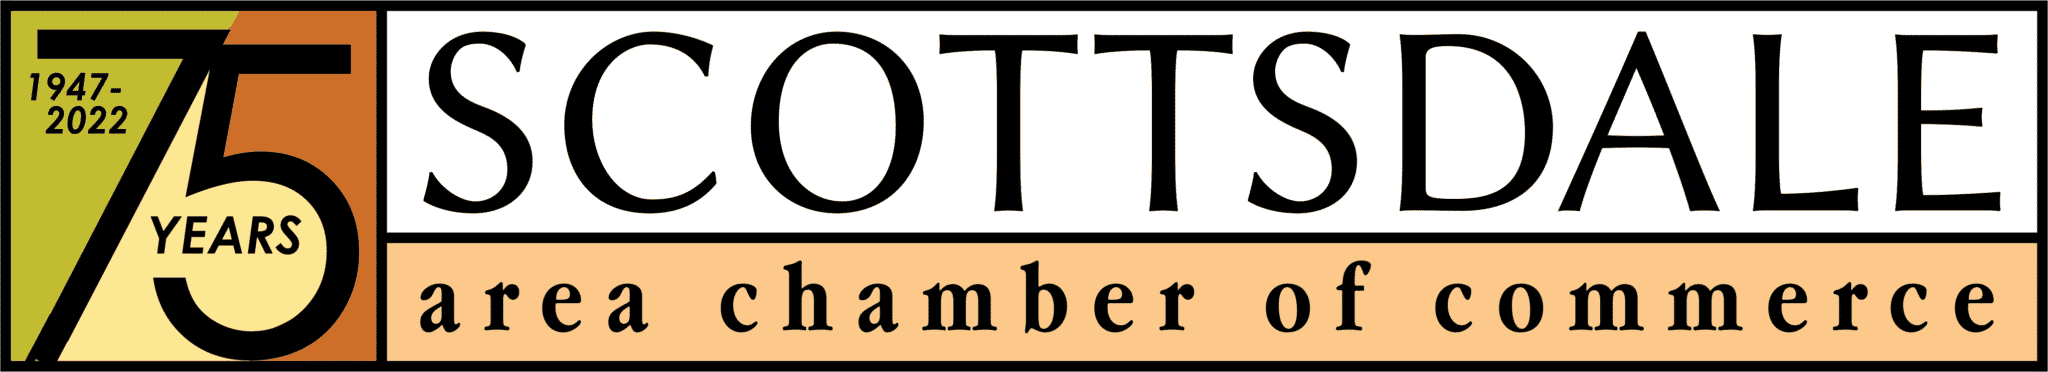 scottsdale chamber logo